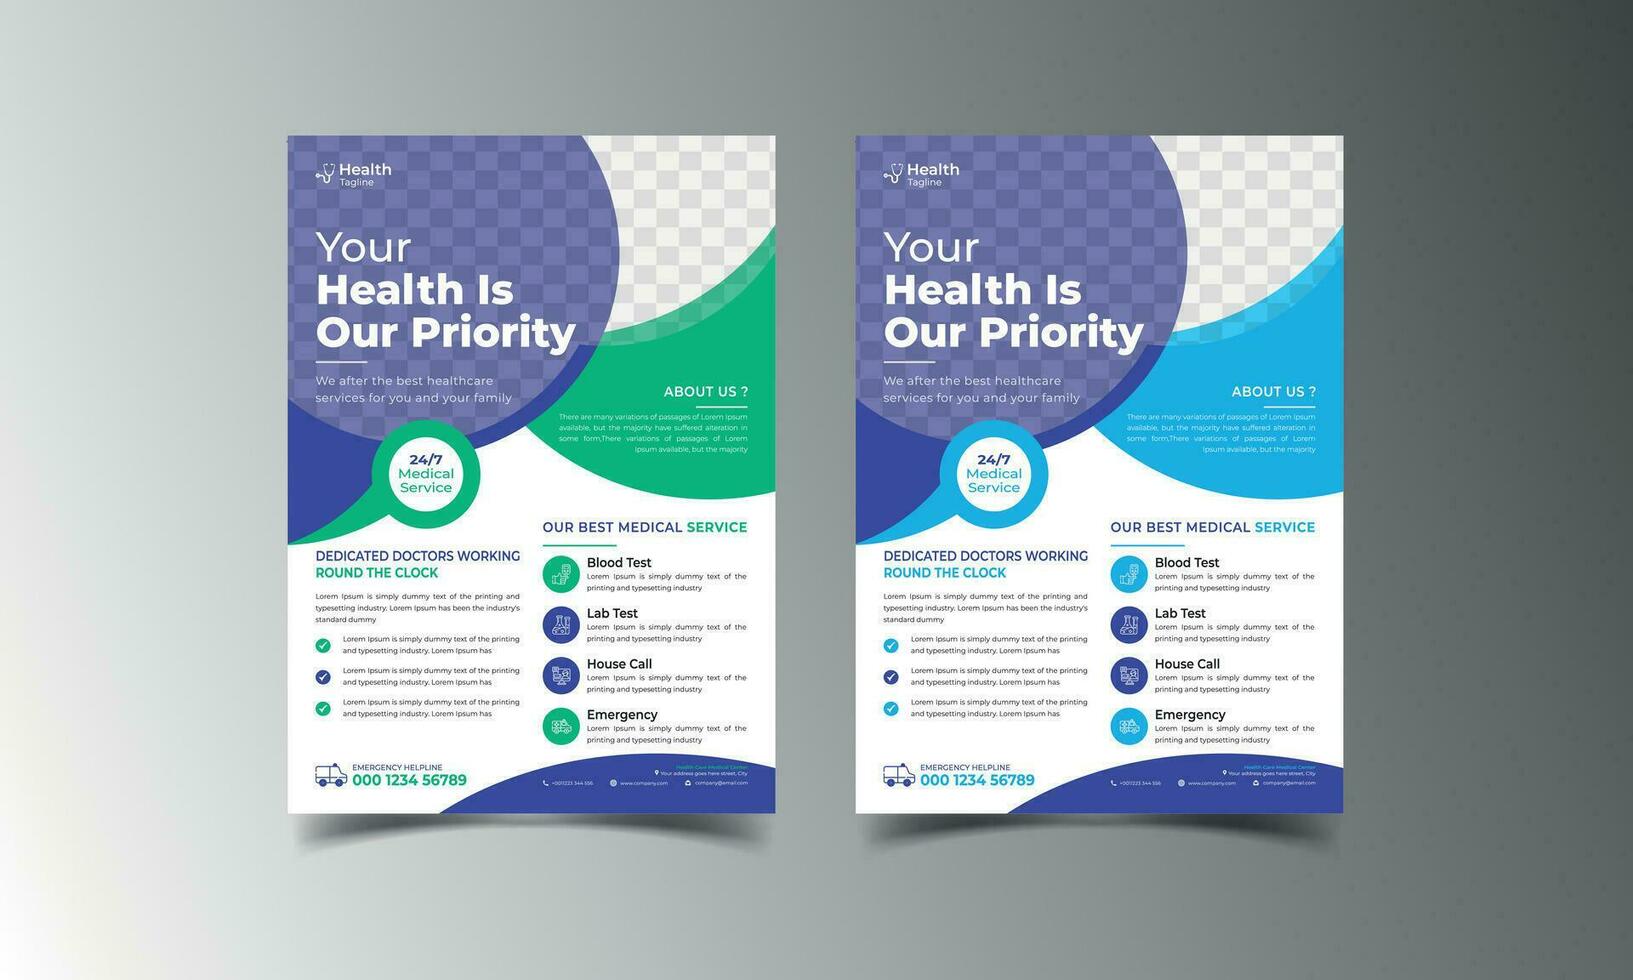 entreprise entreprise flyer affiche brochure brochure couverture conception mise en page fond, deux couleurs, modèle vectoriel au format a4 - vecteur